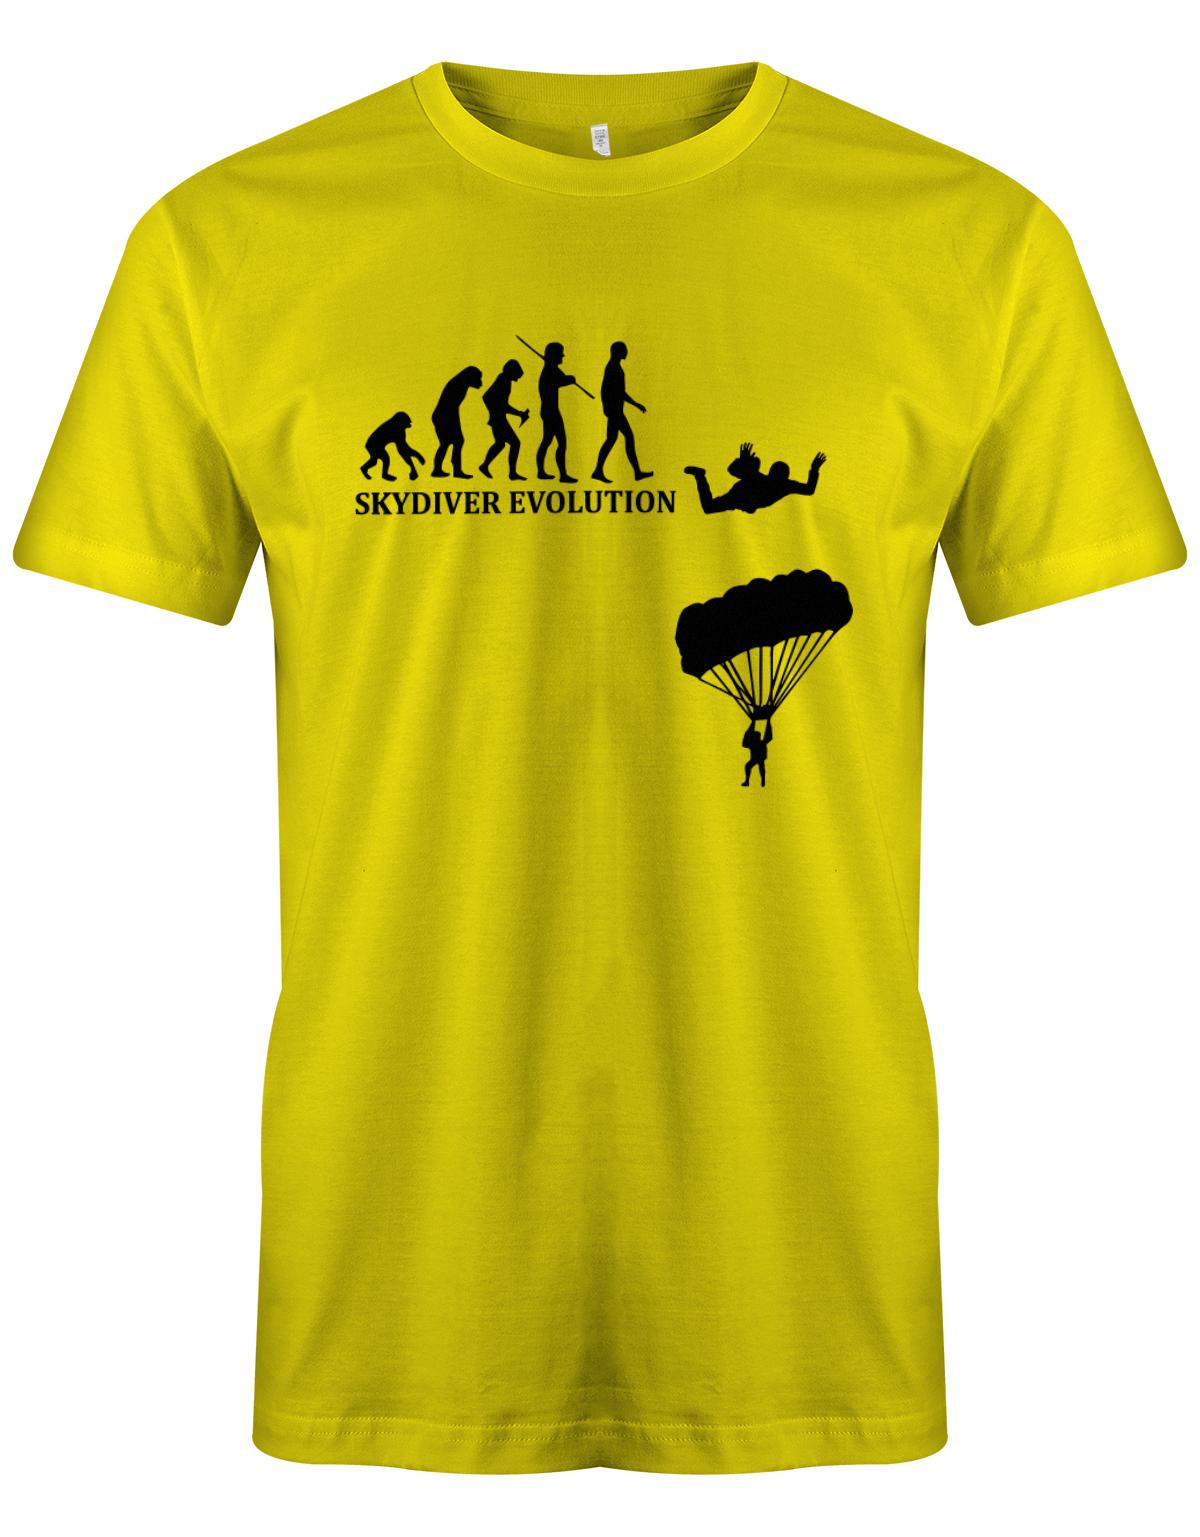 Skydiver-Fallschirmspringer-Evolution-Herren-Shirt-Gelb